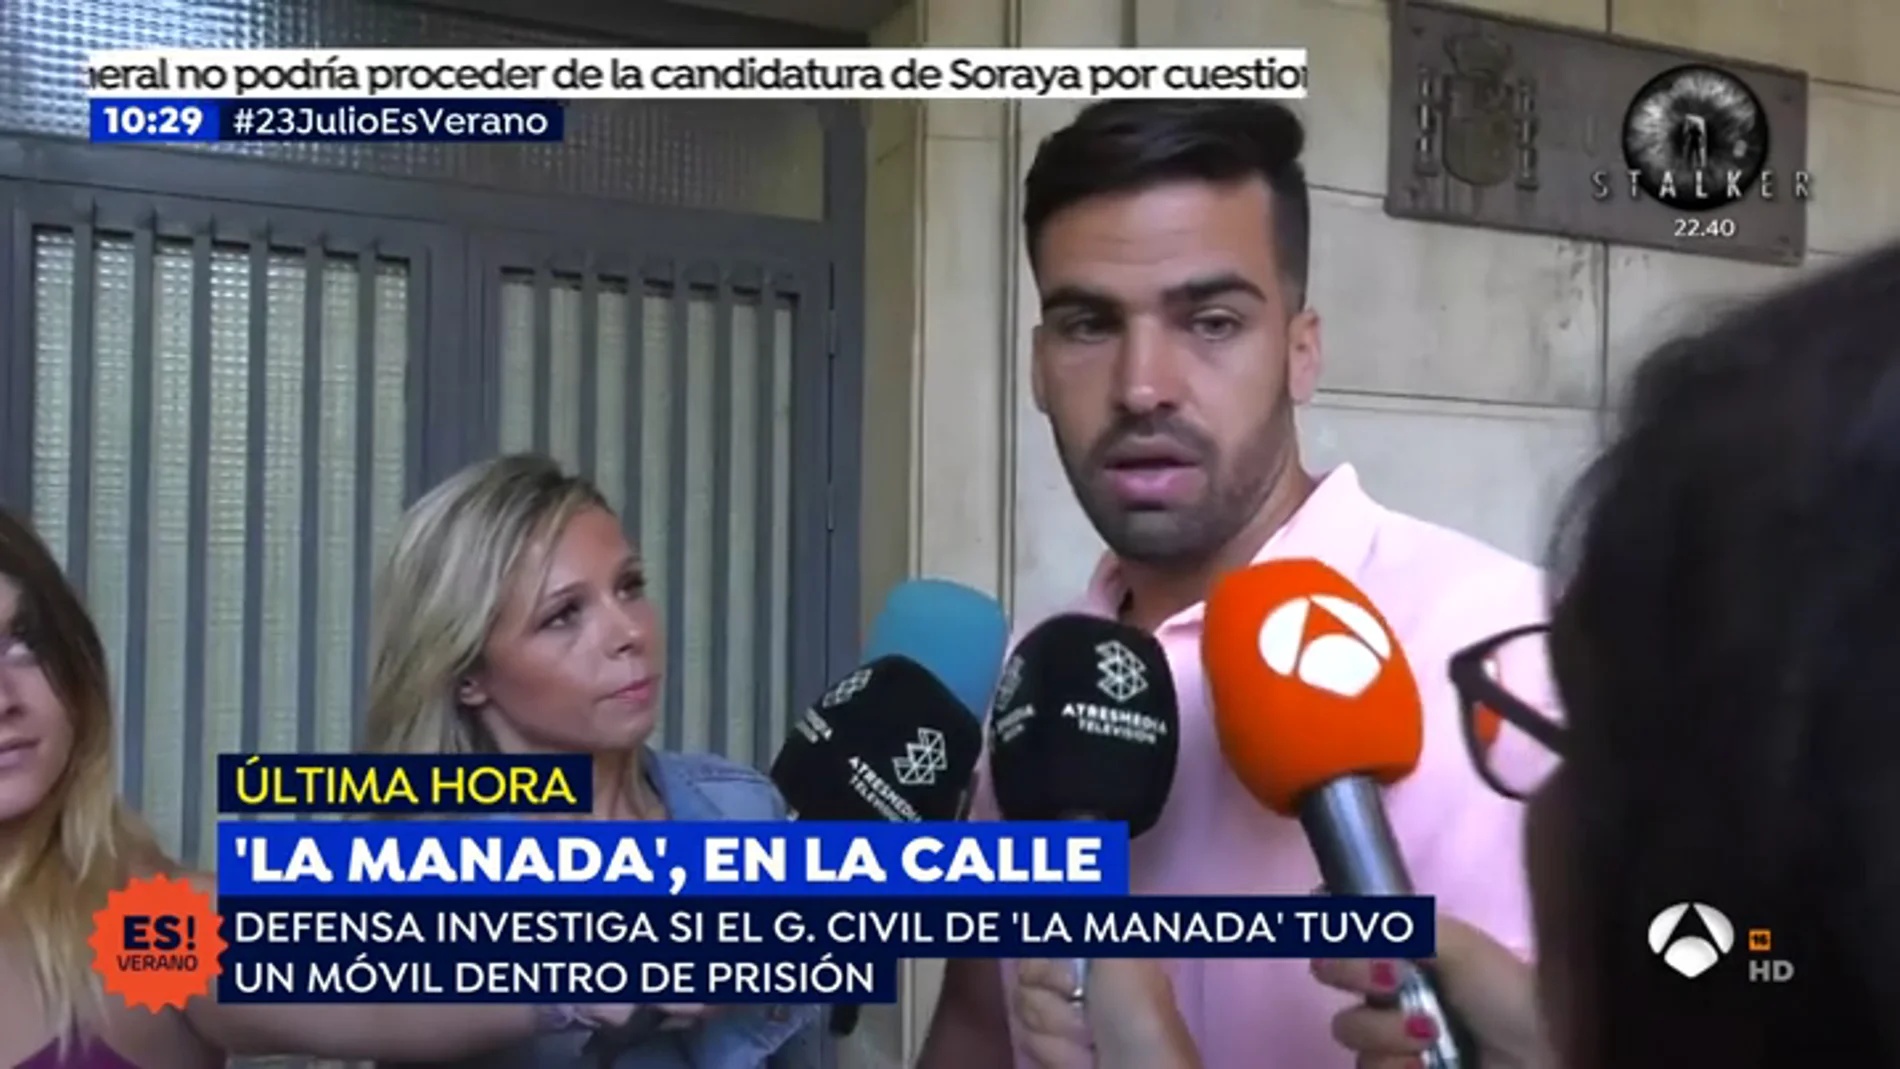 El guardia civil de 'La Manada' rompe su silencio: "Es totalmente falso que haya tenido un móvil en prisión"